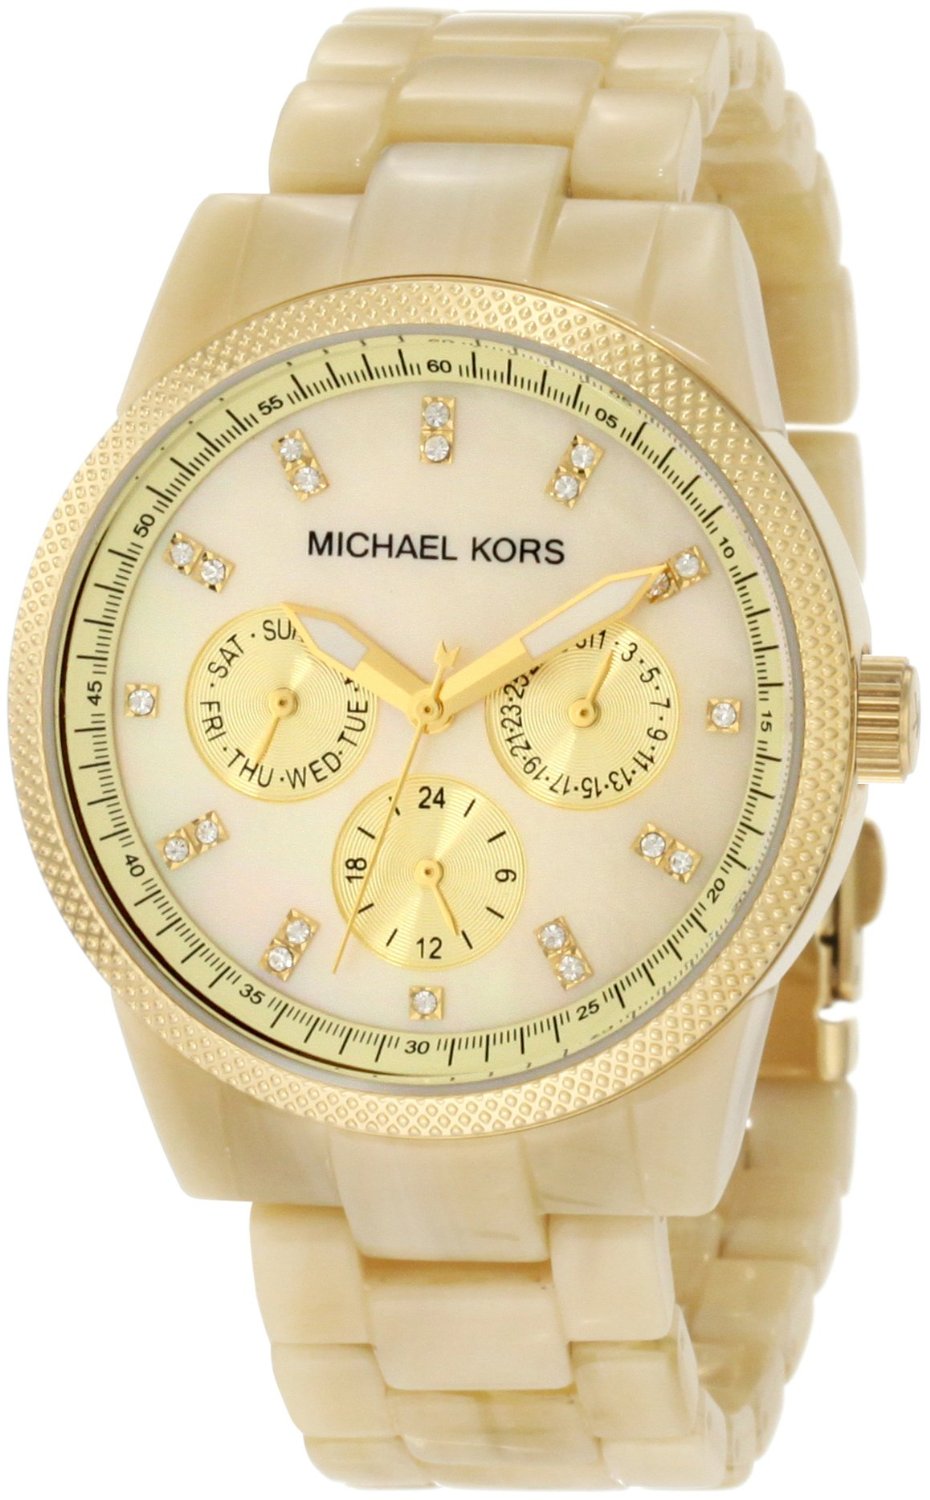 Cheap Michael Kors Watches